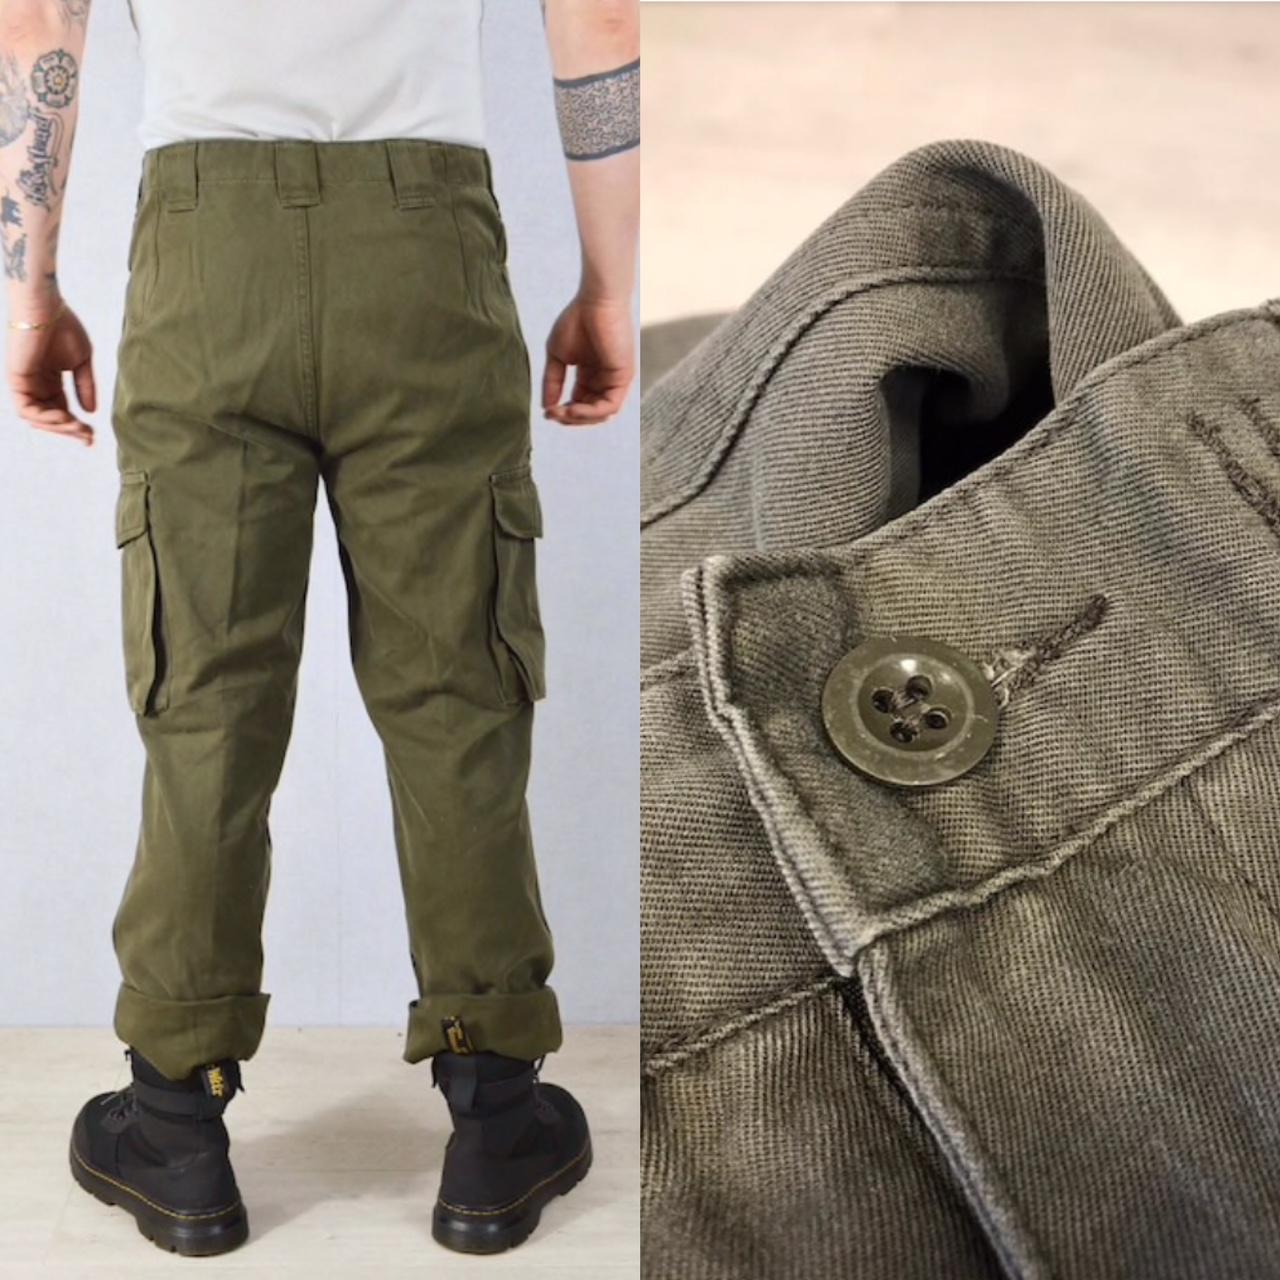 Weatherproof Vintage Pants Military Green W32 - Depop